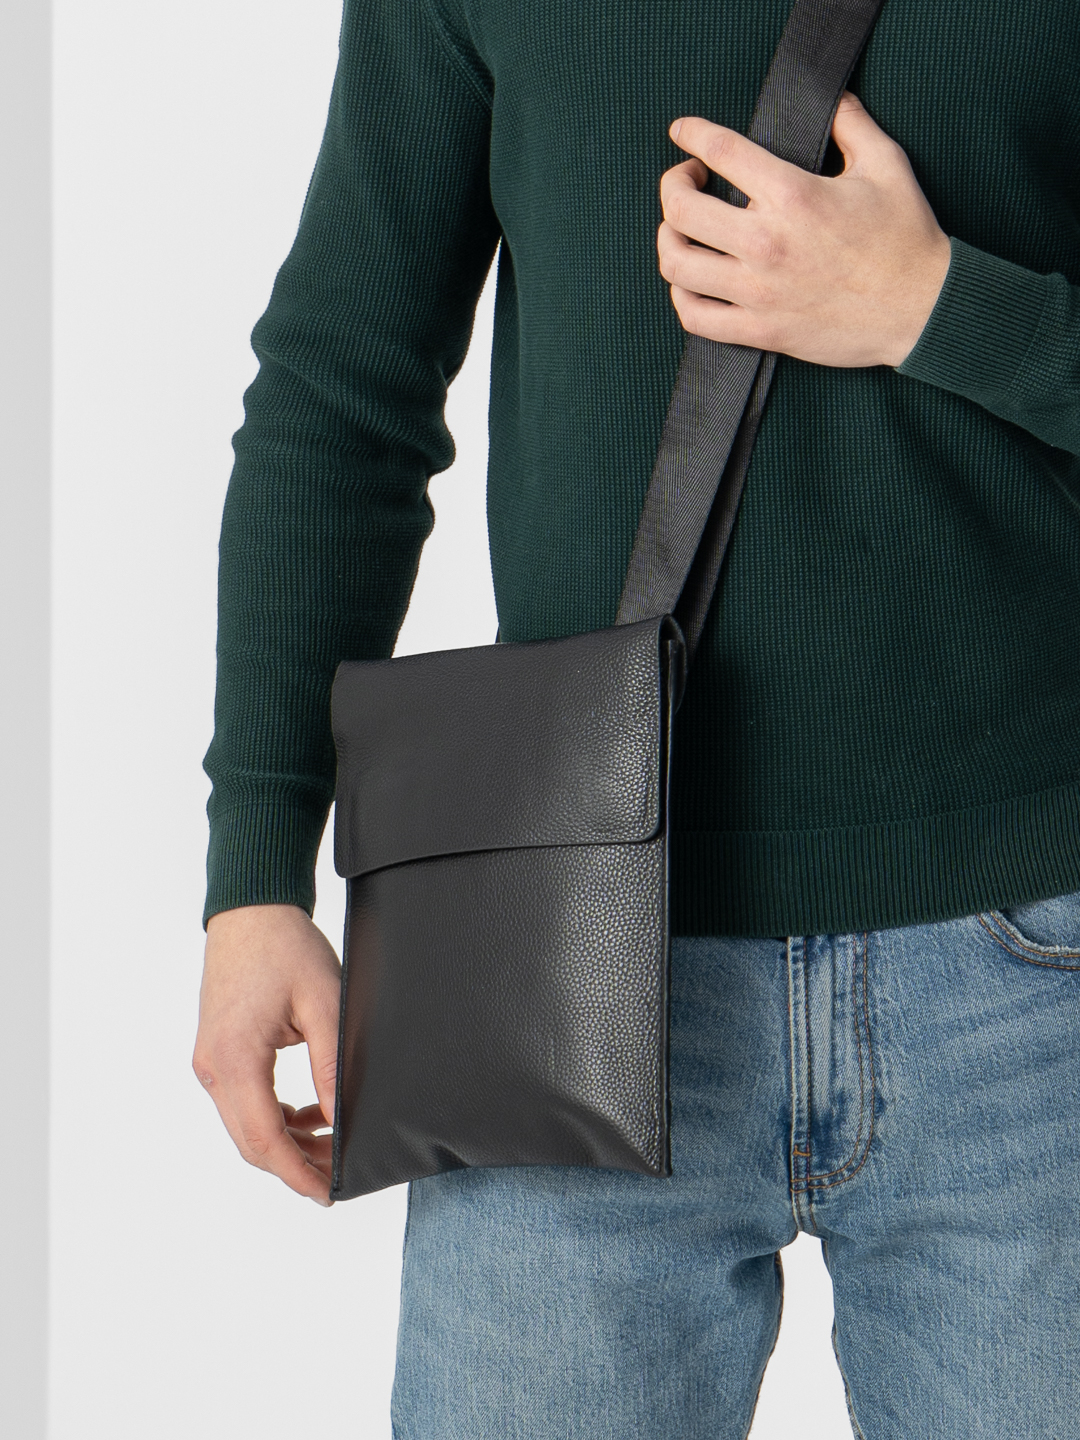 Мужская сумка через плечо своими руками. Как сшить сумку слинг. Мастер Класс!(2020)